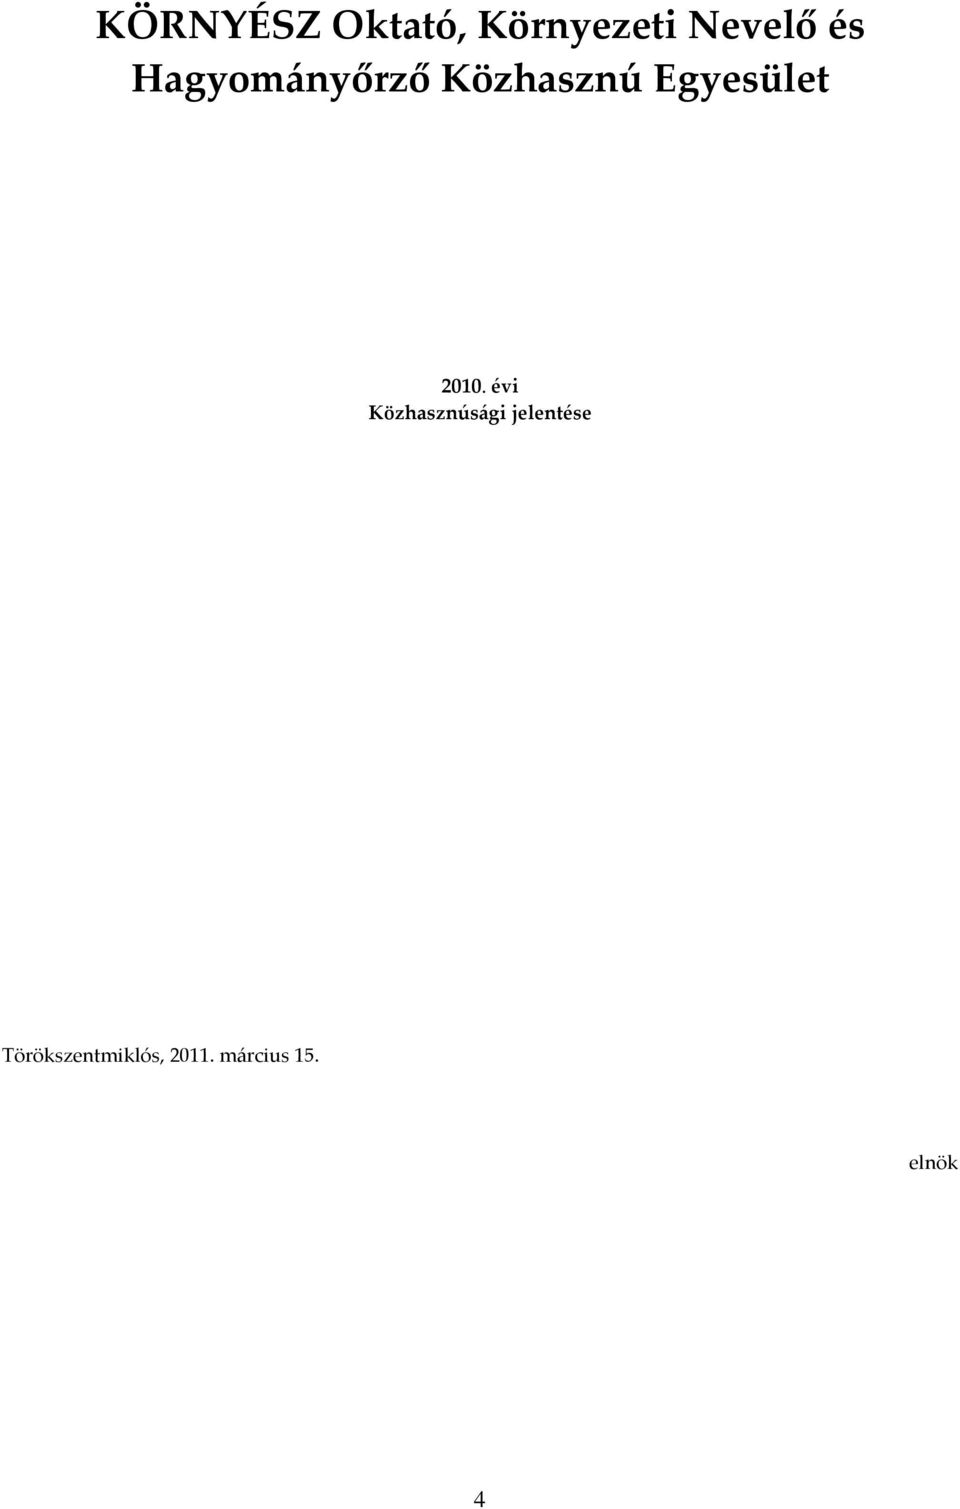 2010. évi Közhasznúsági jelentése